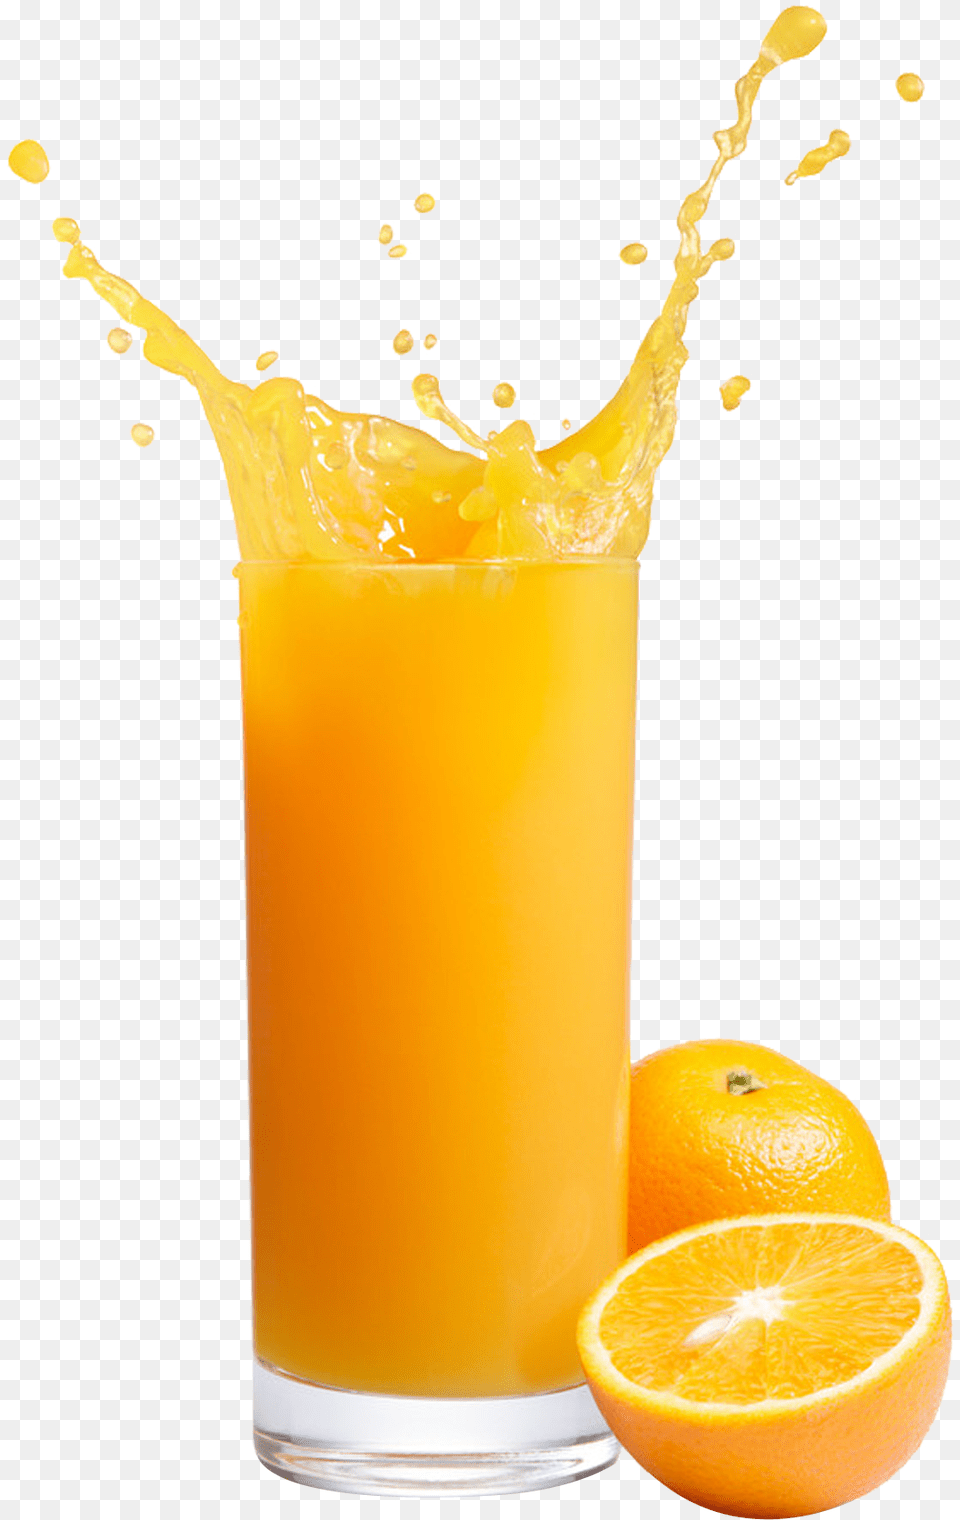 Orange Juice Images Free Download Transparent Background Orange Juice, Beverage, Orange Juice, Citrus Fruit, Food Png Image